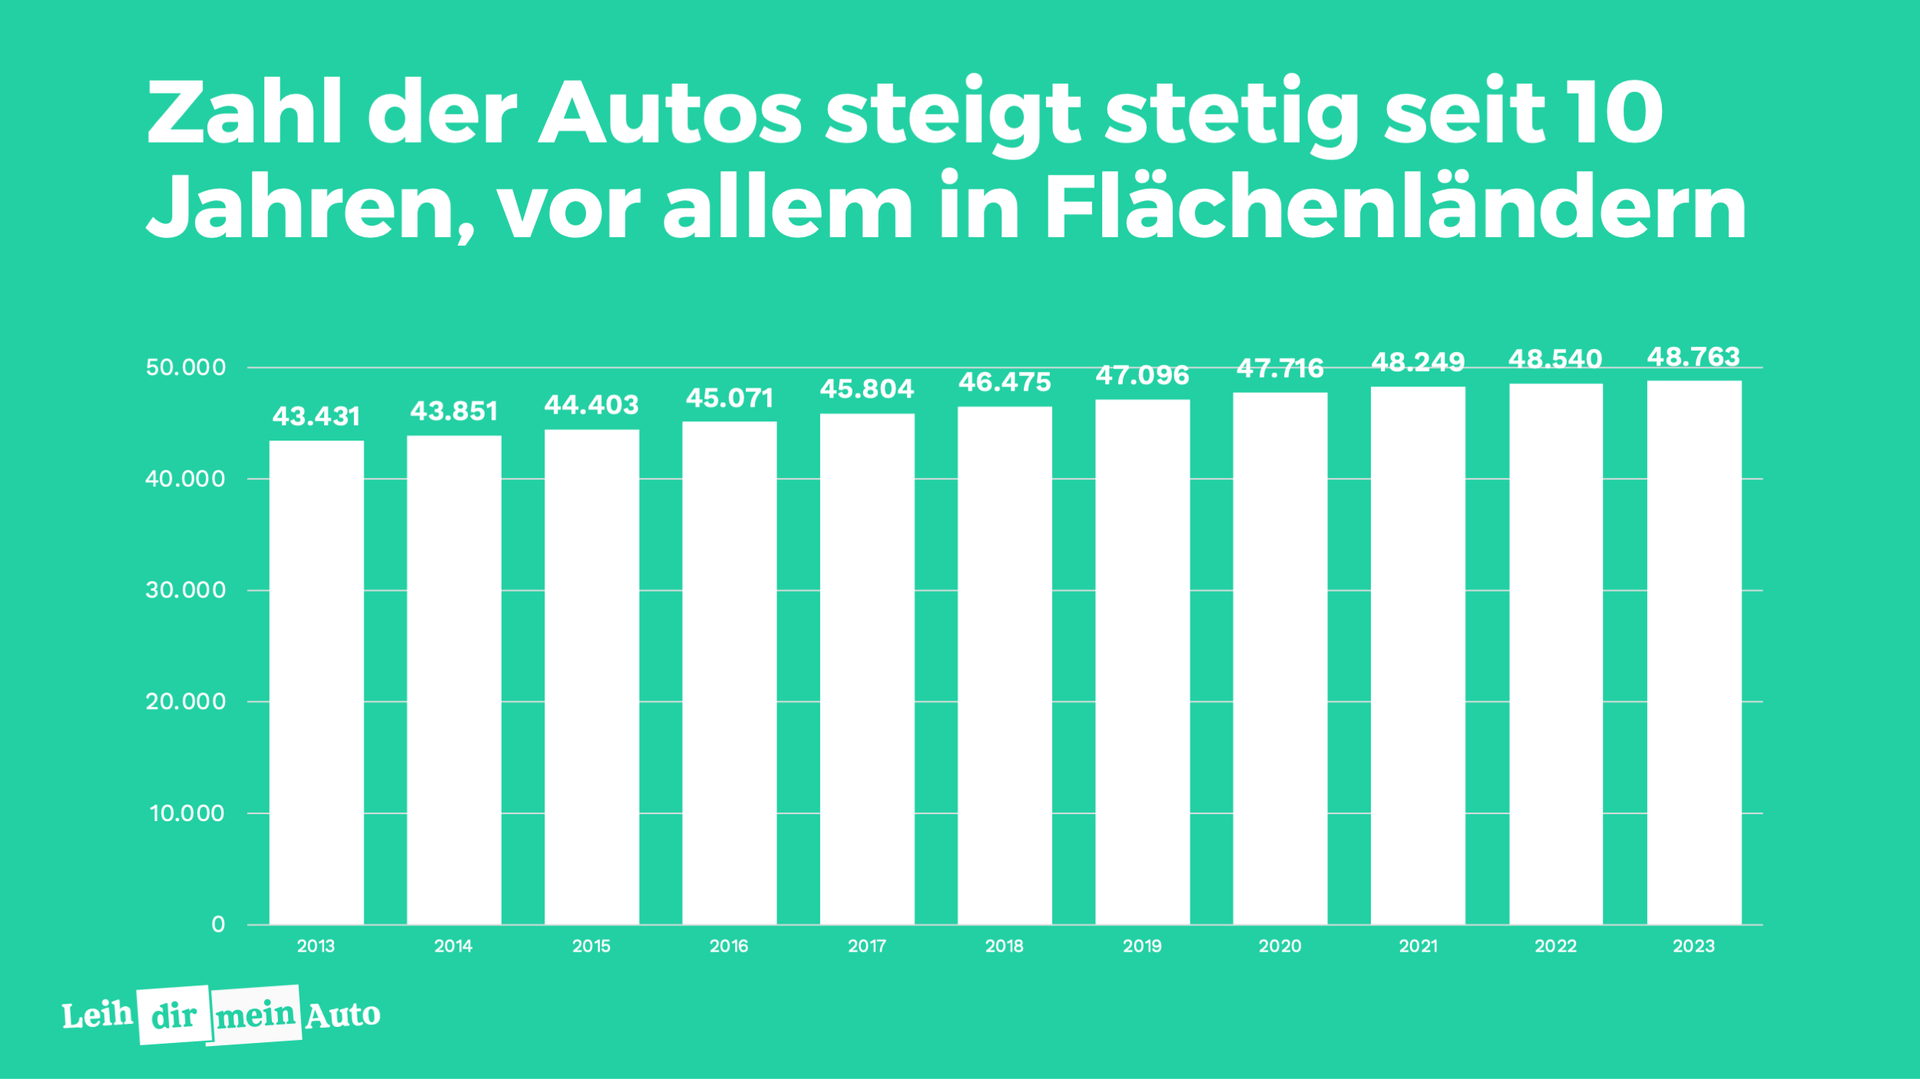 Infografik zeigt ansteigenden Trend: Zahl der Autos wächst kontinuierlich über 10 Jahre, besonders in ländlichen Regionen Deutschlands.